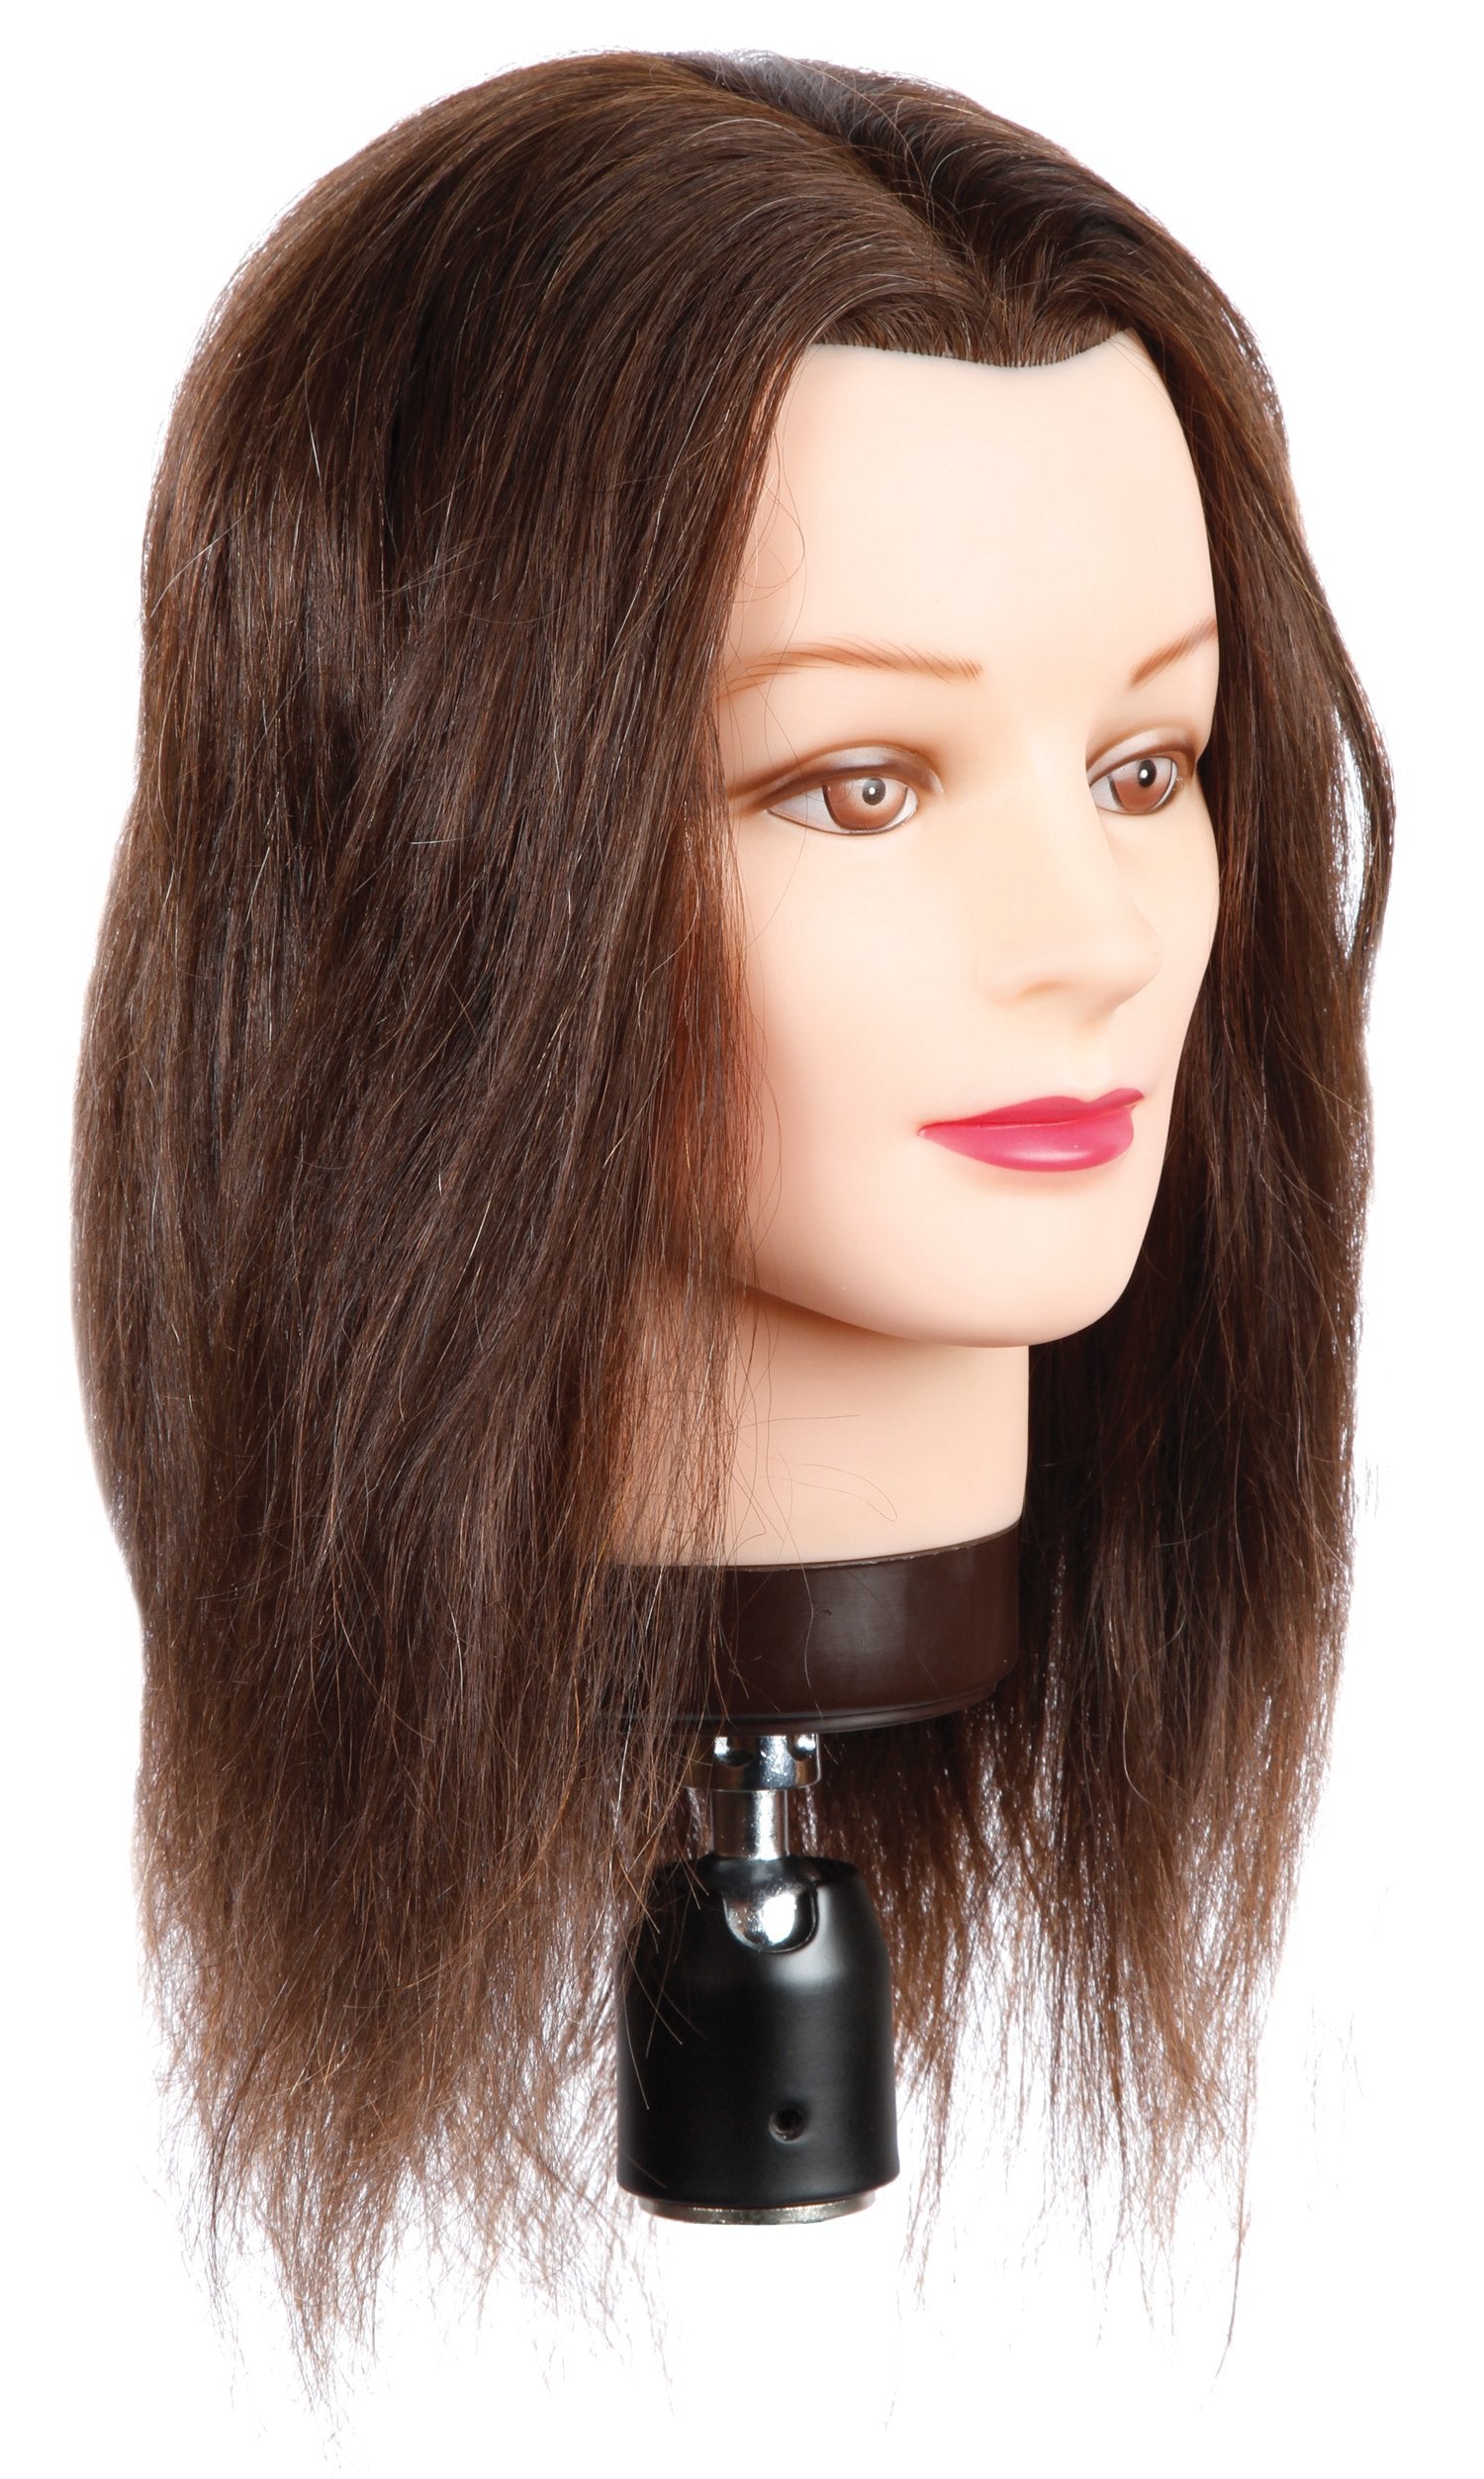 Rose [80% Human Hair, 10% Synthetic Hair, 10% Horse Hair]